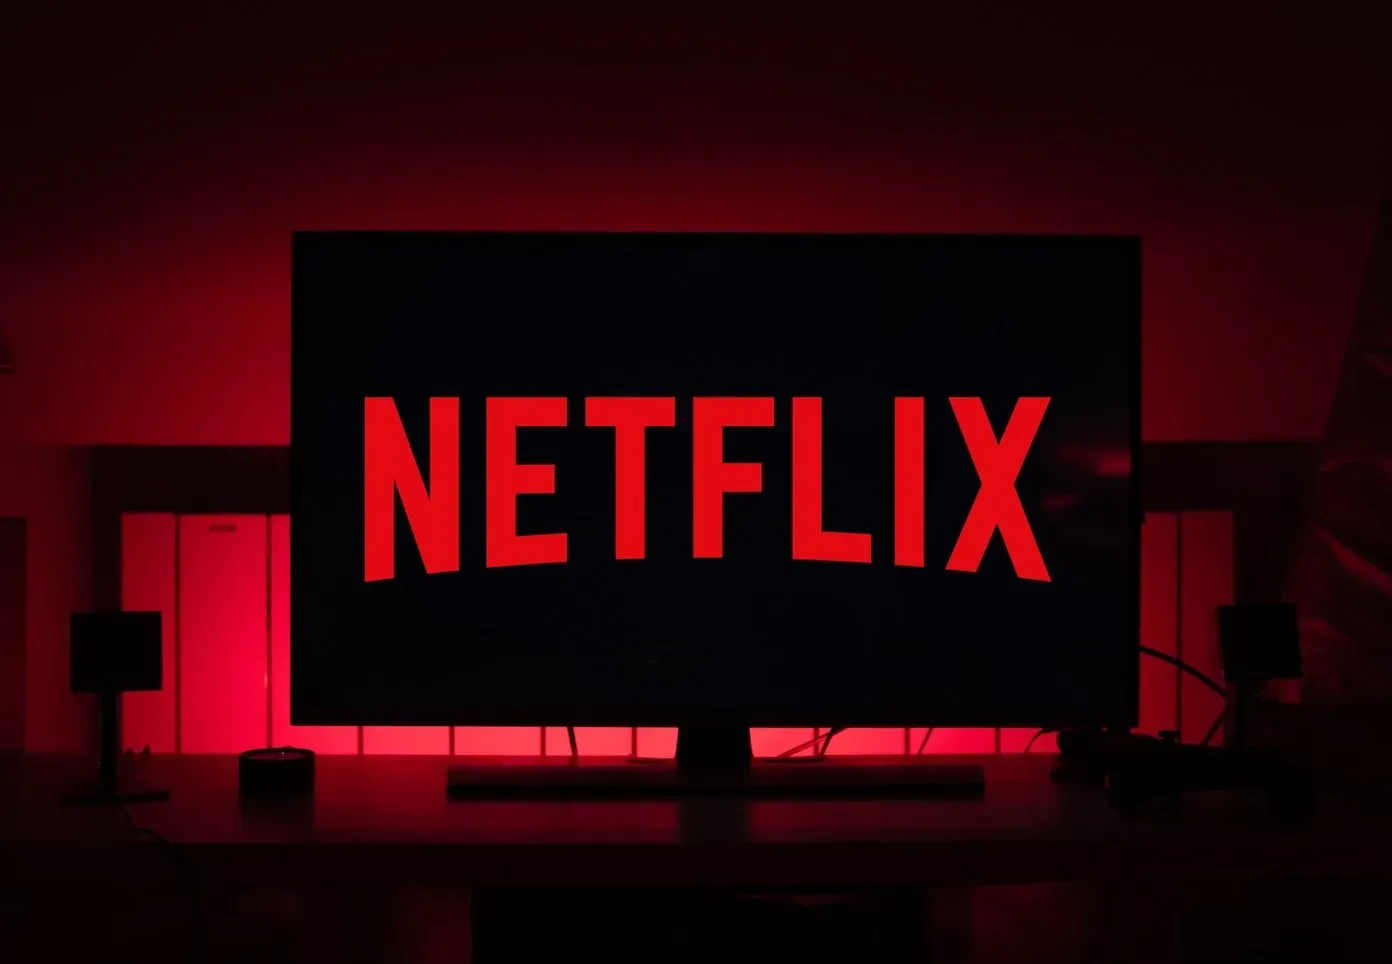 
											
											Мисрлик адвокат Netflix'ни судга берди
											
											